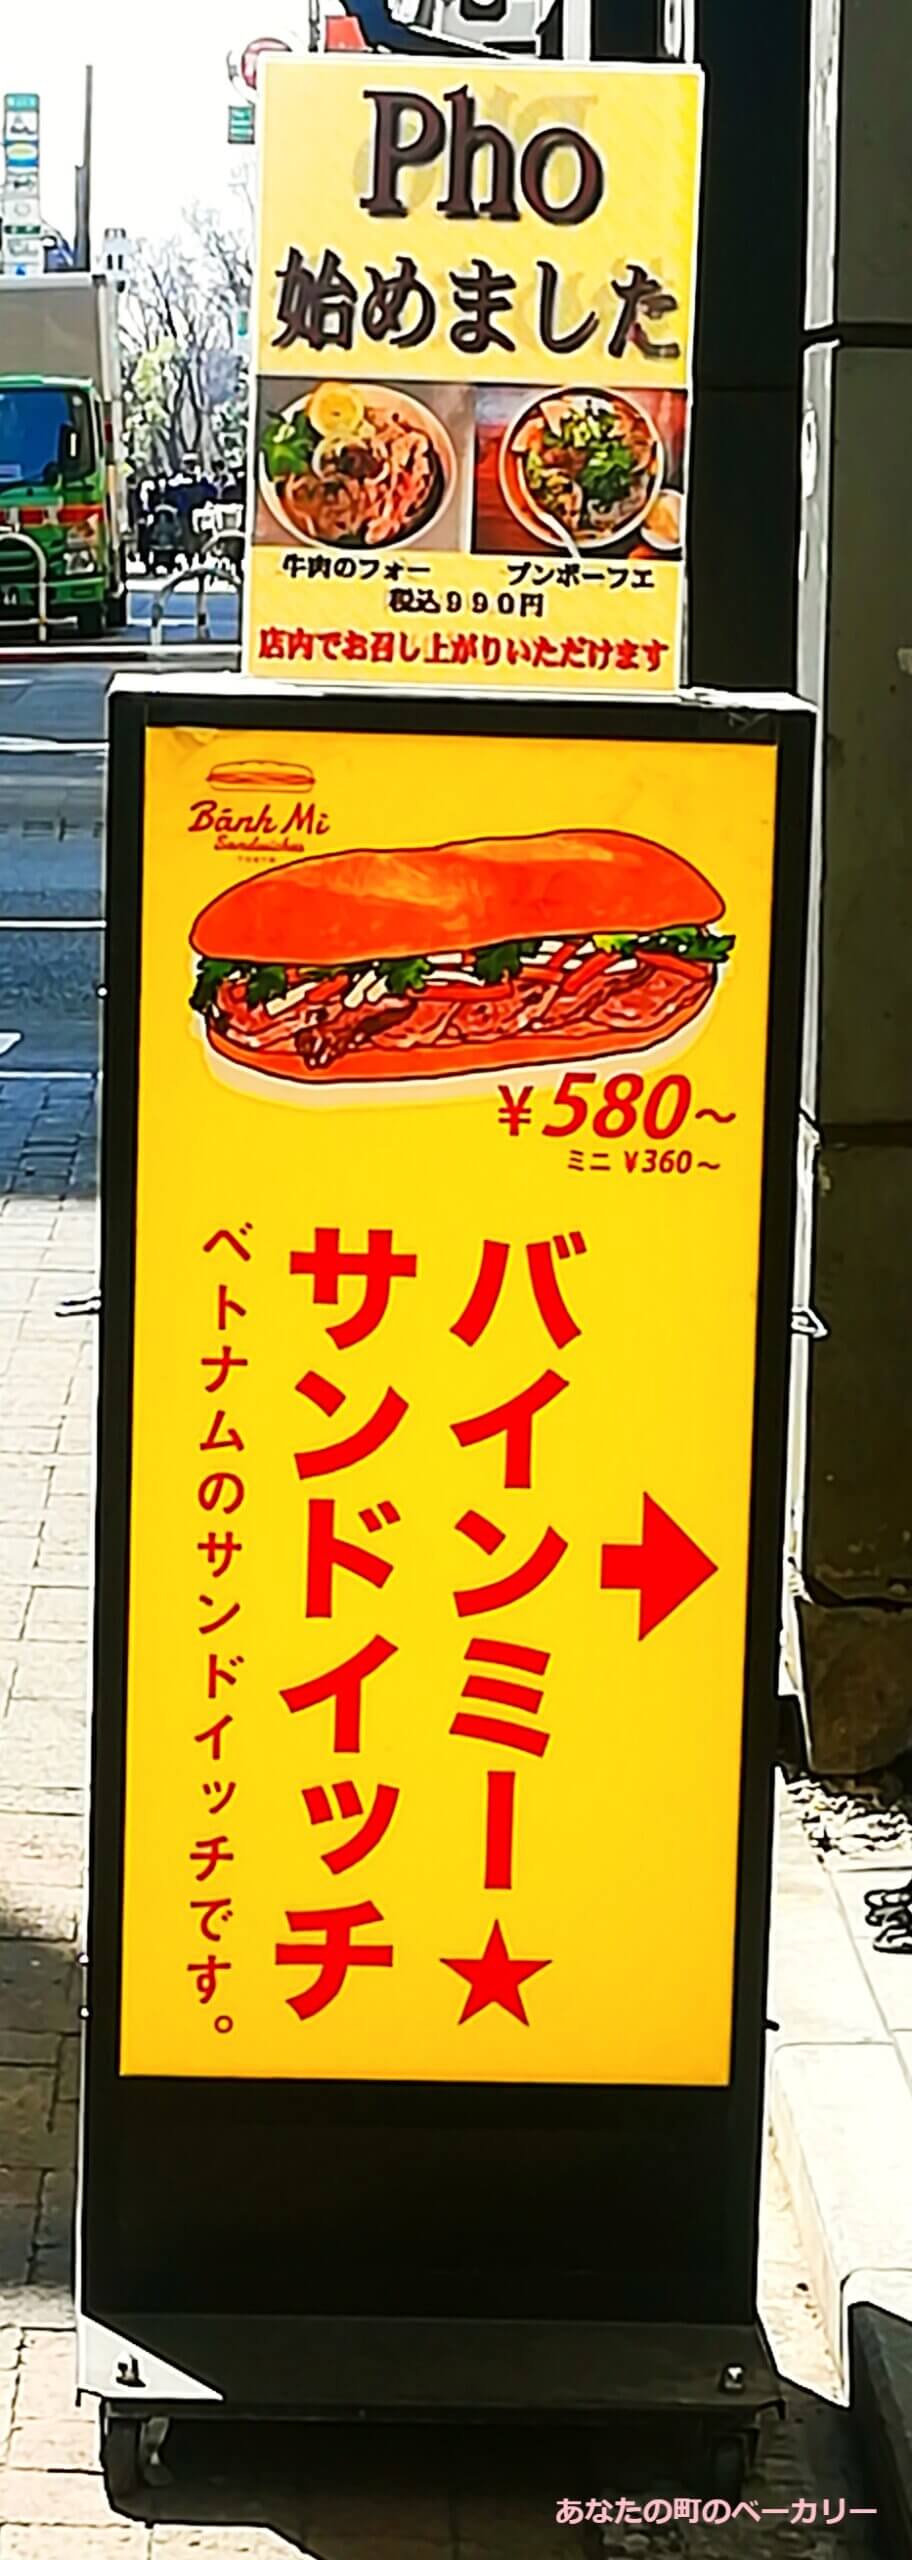 バインミー☆サンドイッチ吉祥寺店の看板